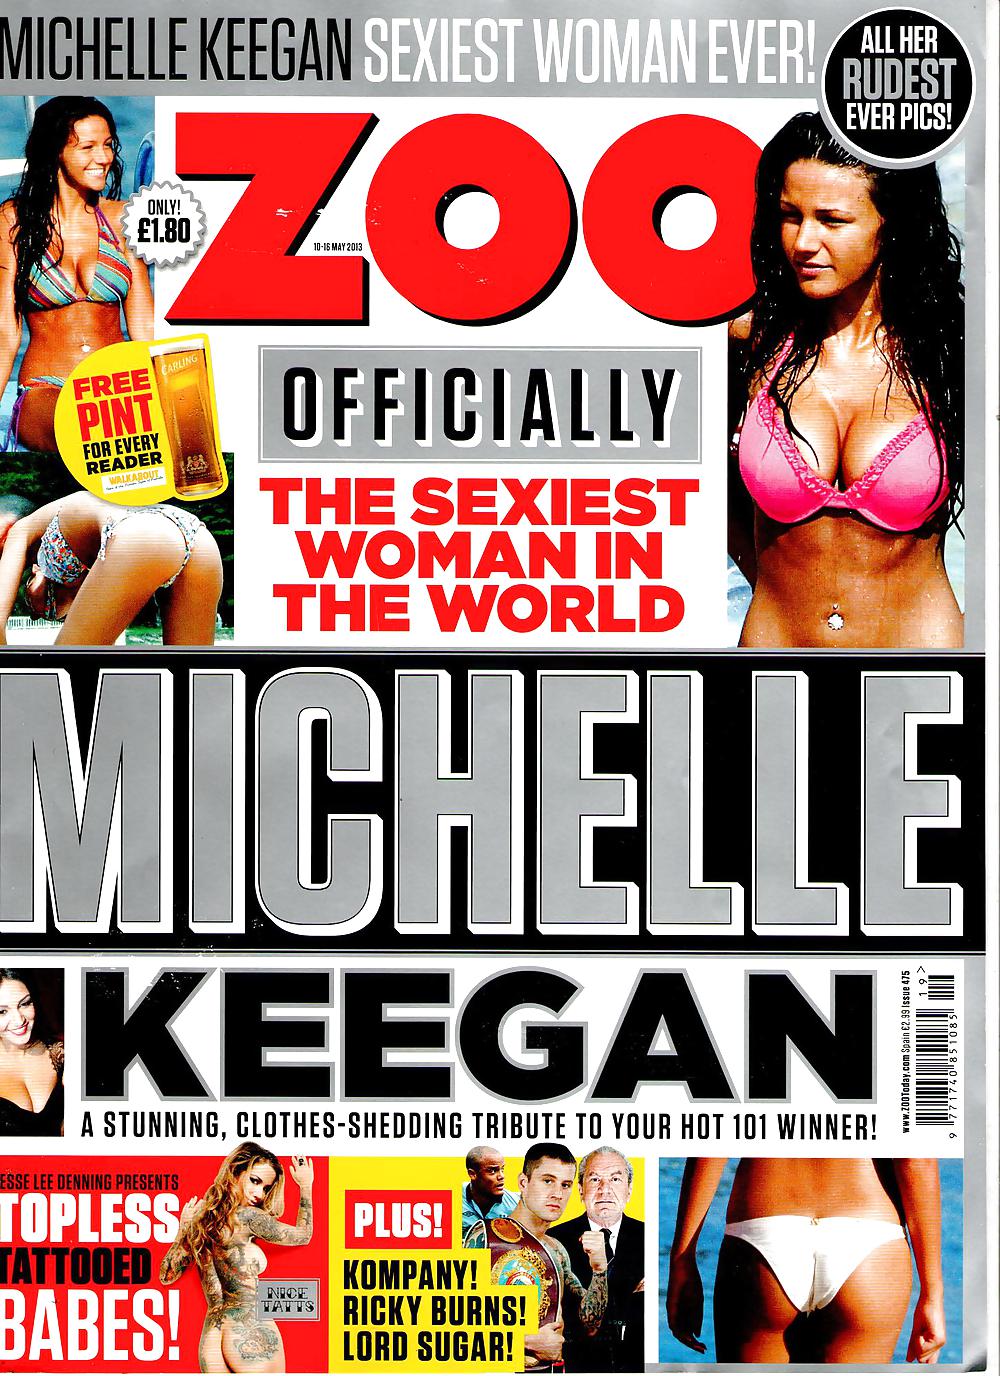 Michelle keegan - rivista uk 10 maggio 2013 #38052876